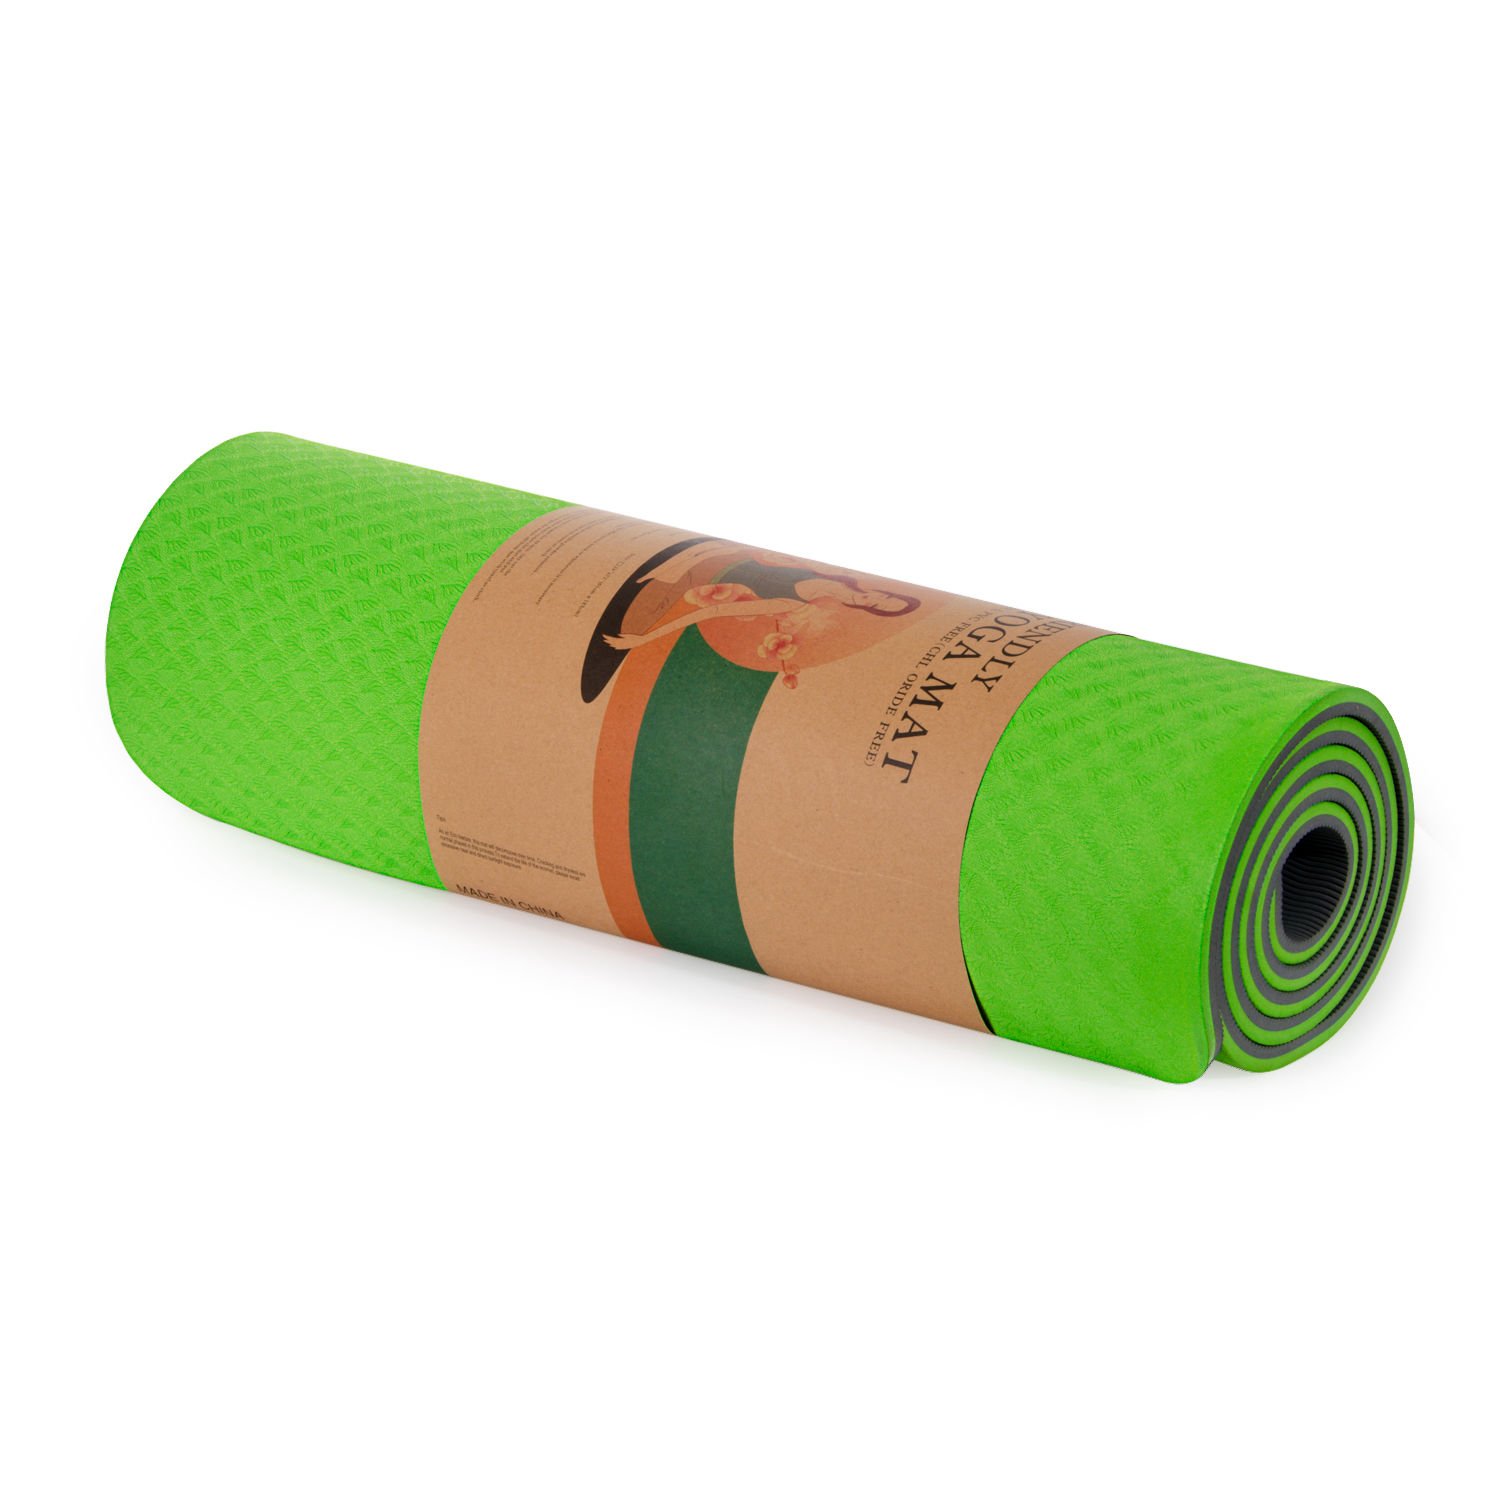 8 mm Çift Taraflı Kullanılabilir Kaymaz Yüzey Yoga Matı -Yeşil